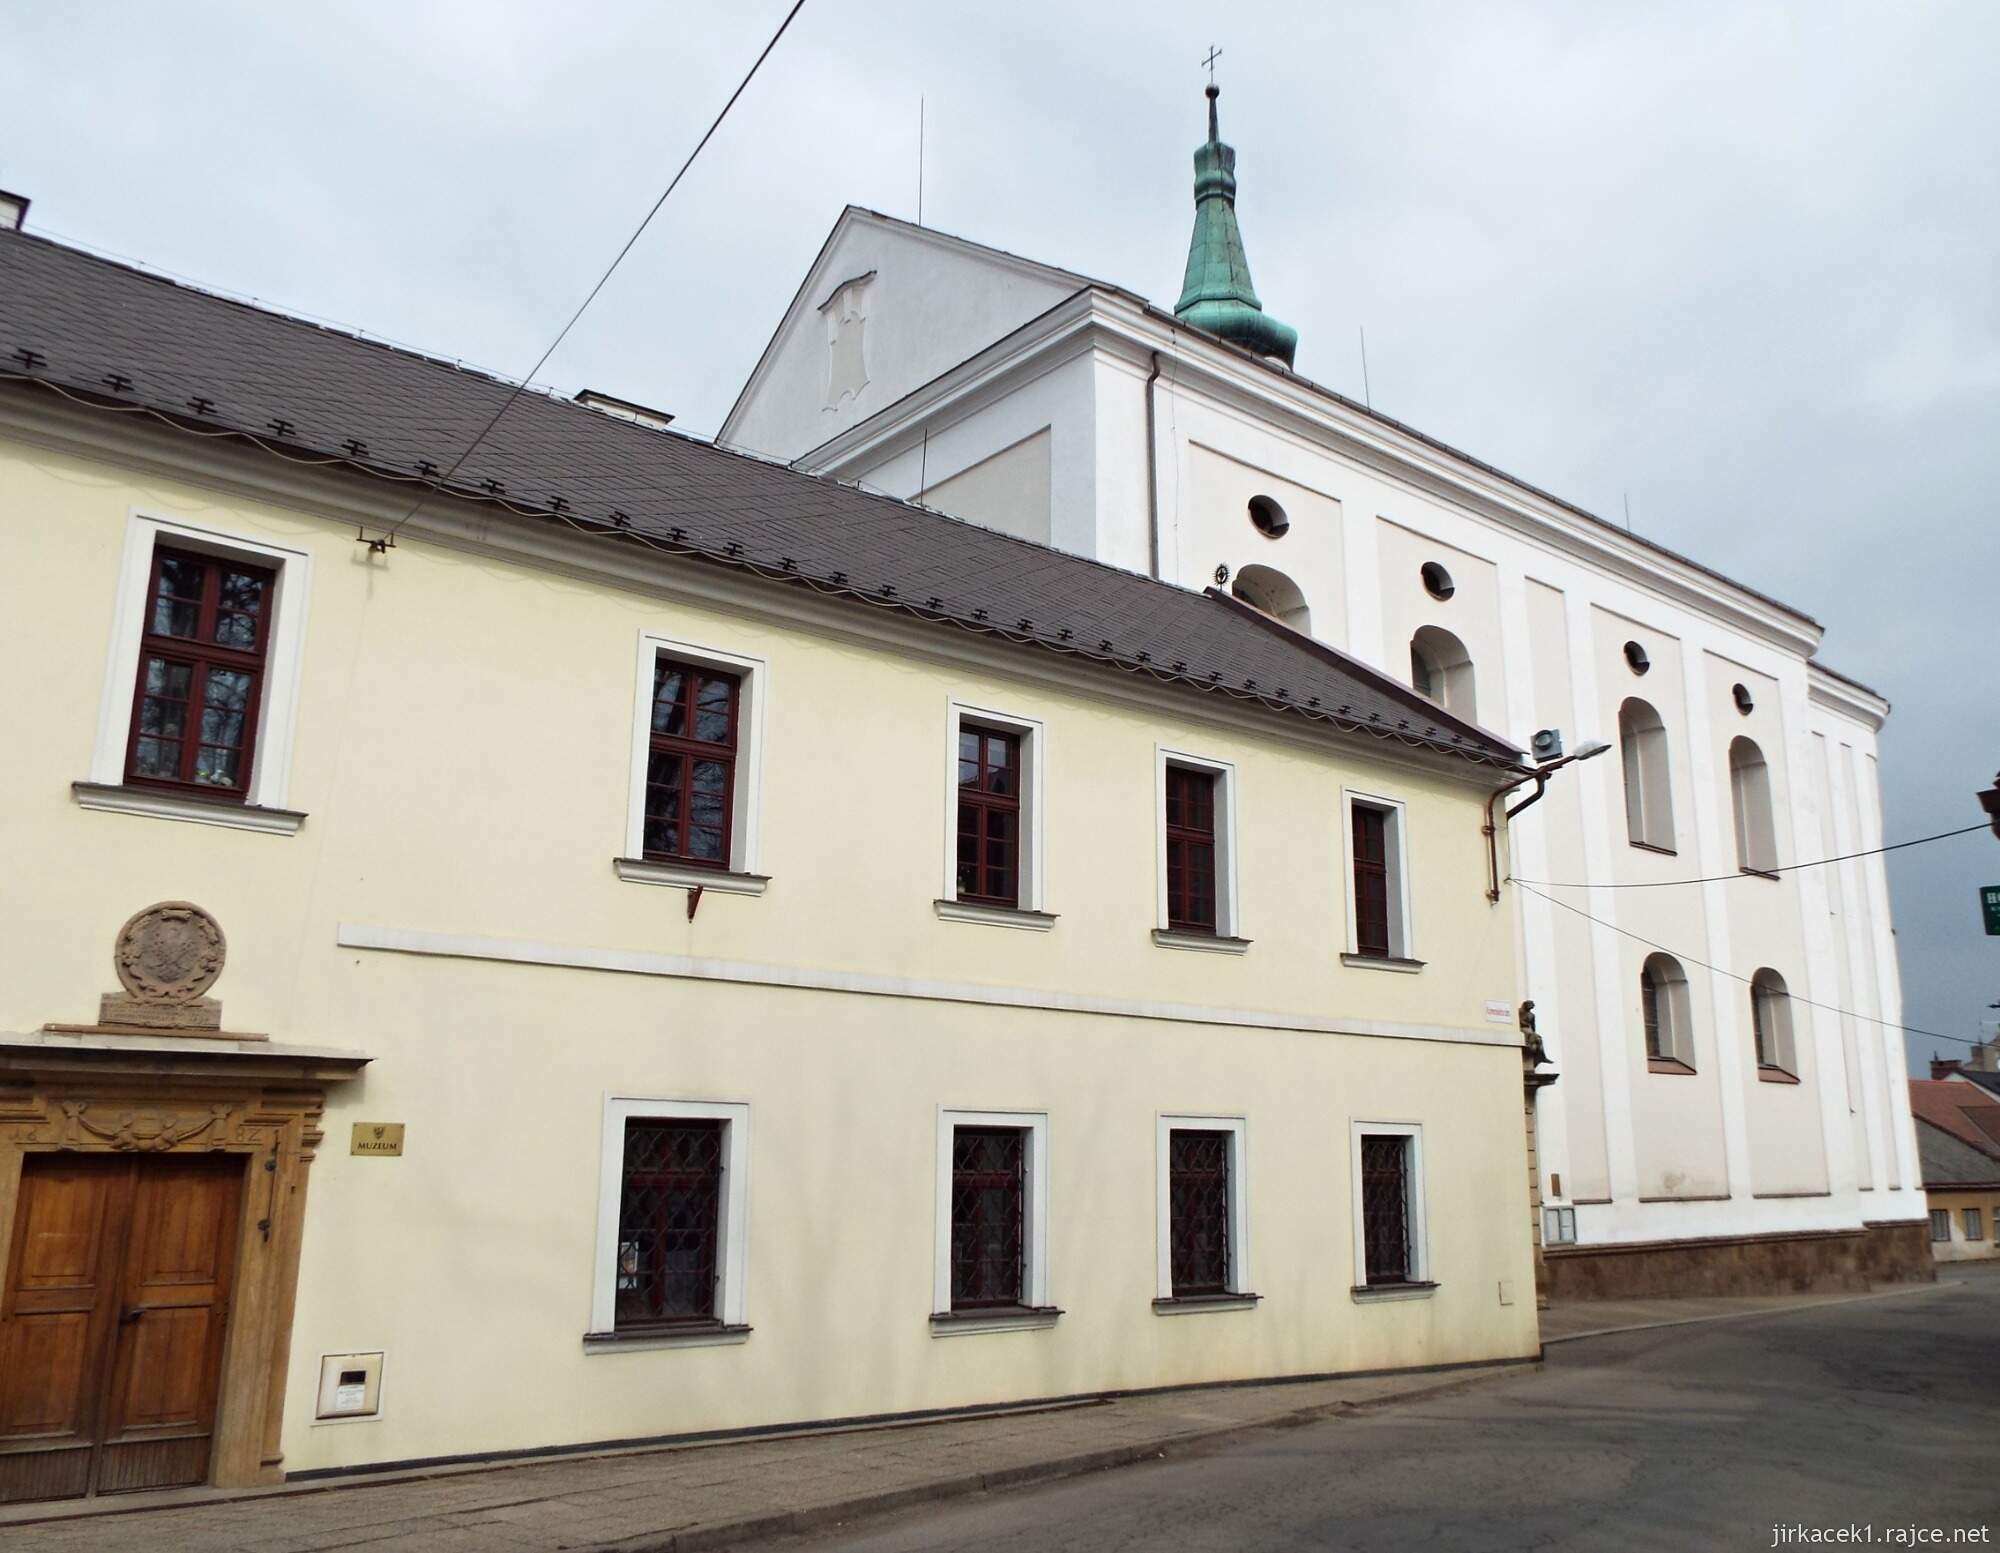 06 - Jevíčko - Kostel Nanebevzetí Panny Marie s klášterem Augustiánů 14